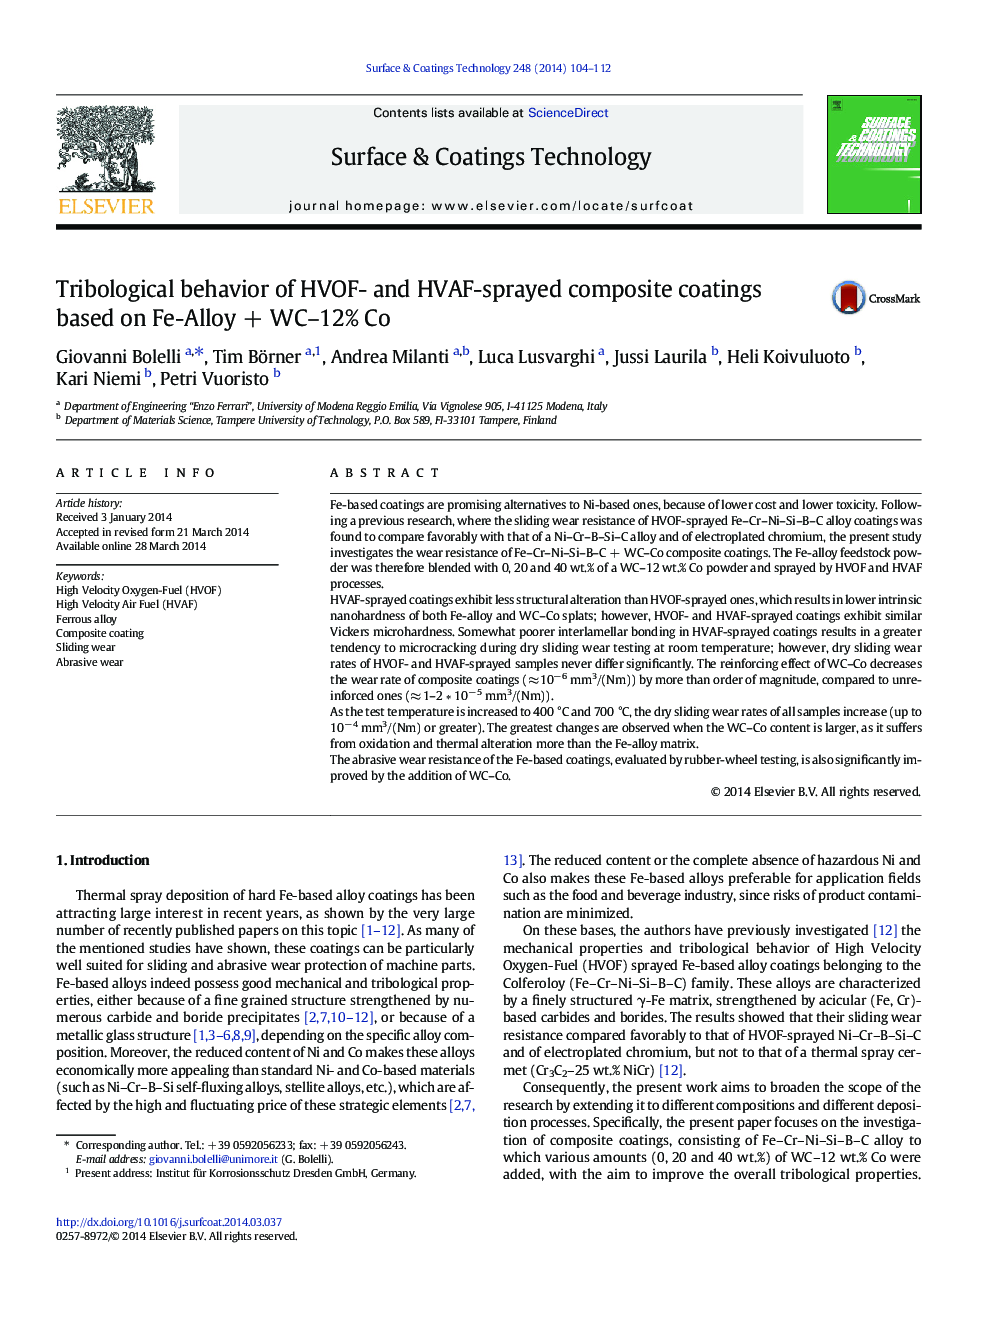 Tribological behavior of HVOF- and HVAF-sprayed composite coatings based on Fe-Alloy + WC–12% Co